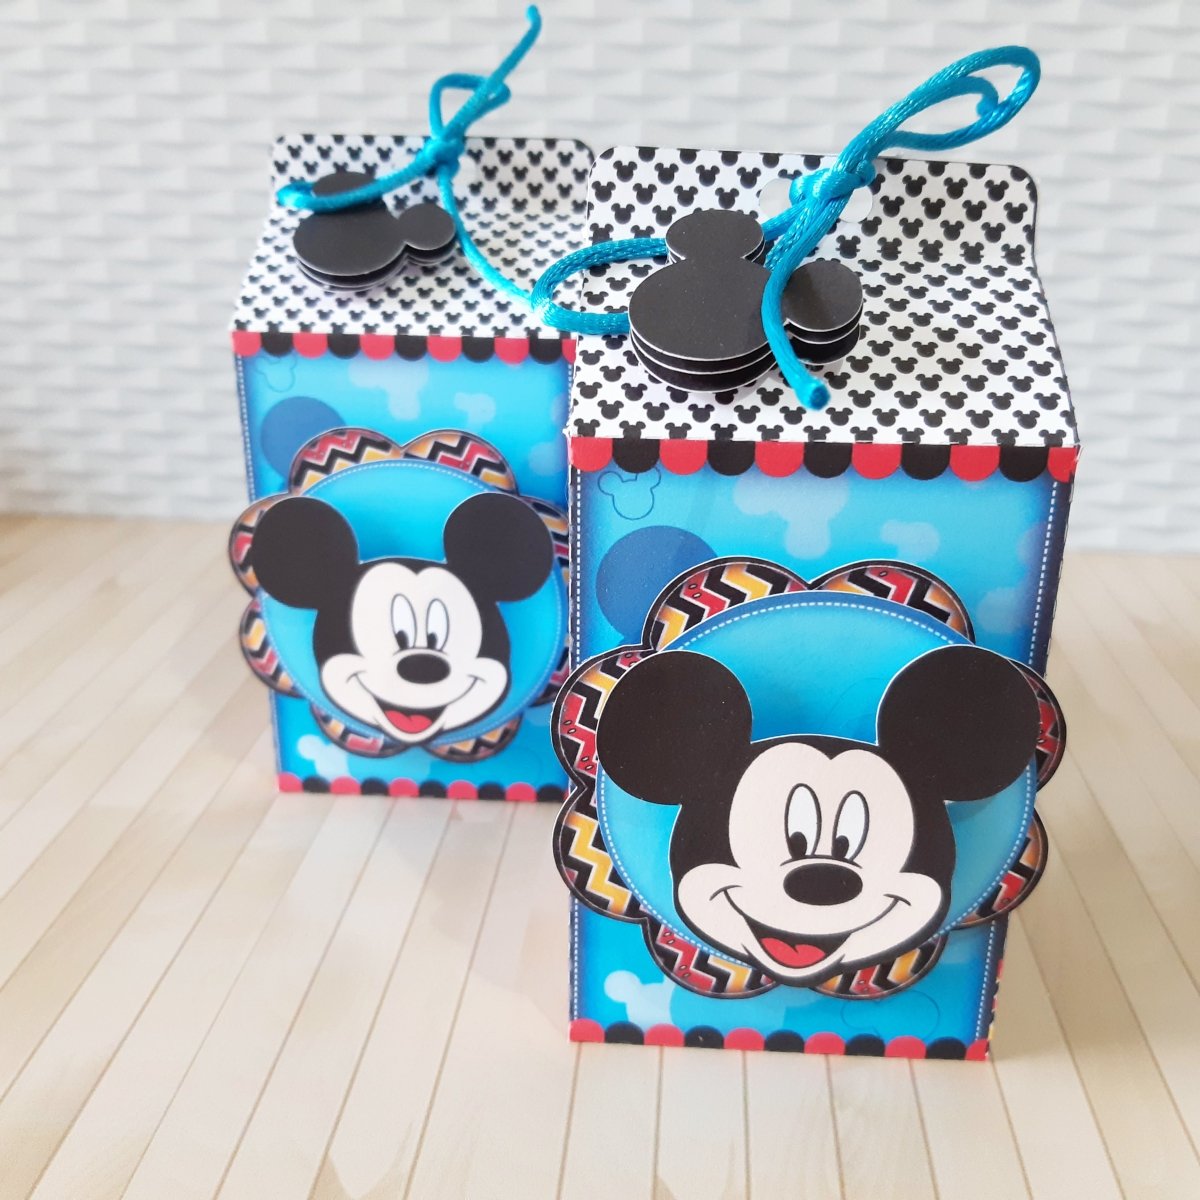 Festa de Aniversário Mickey 2 - Festas Aquarela a melhor decoração de festa de aniversário está aqui!